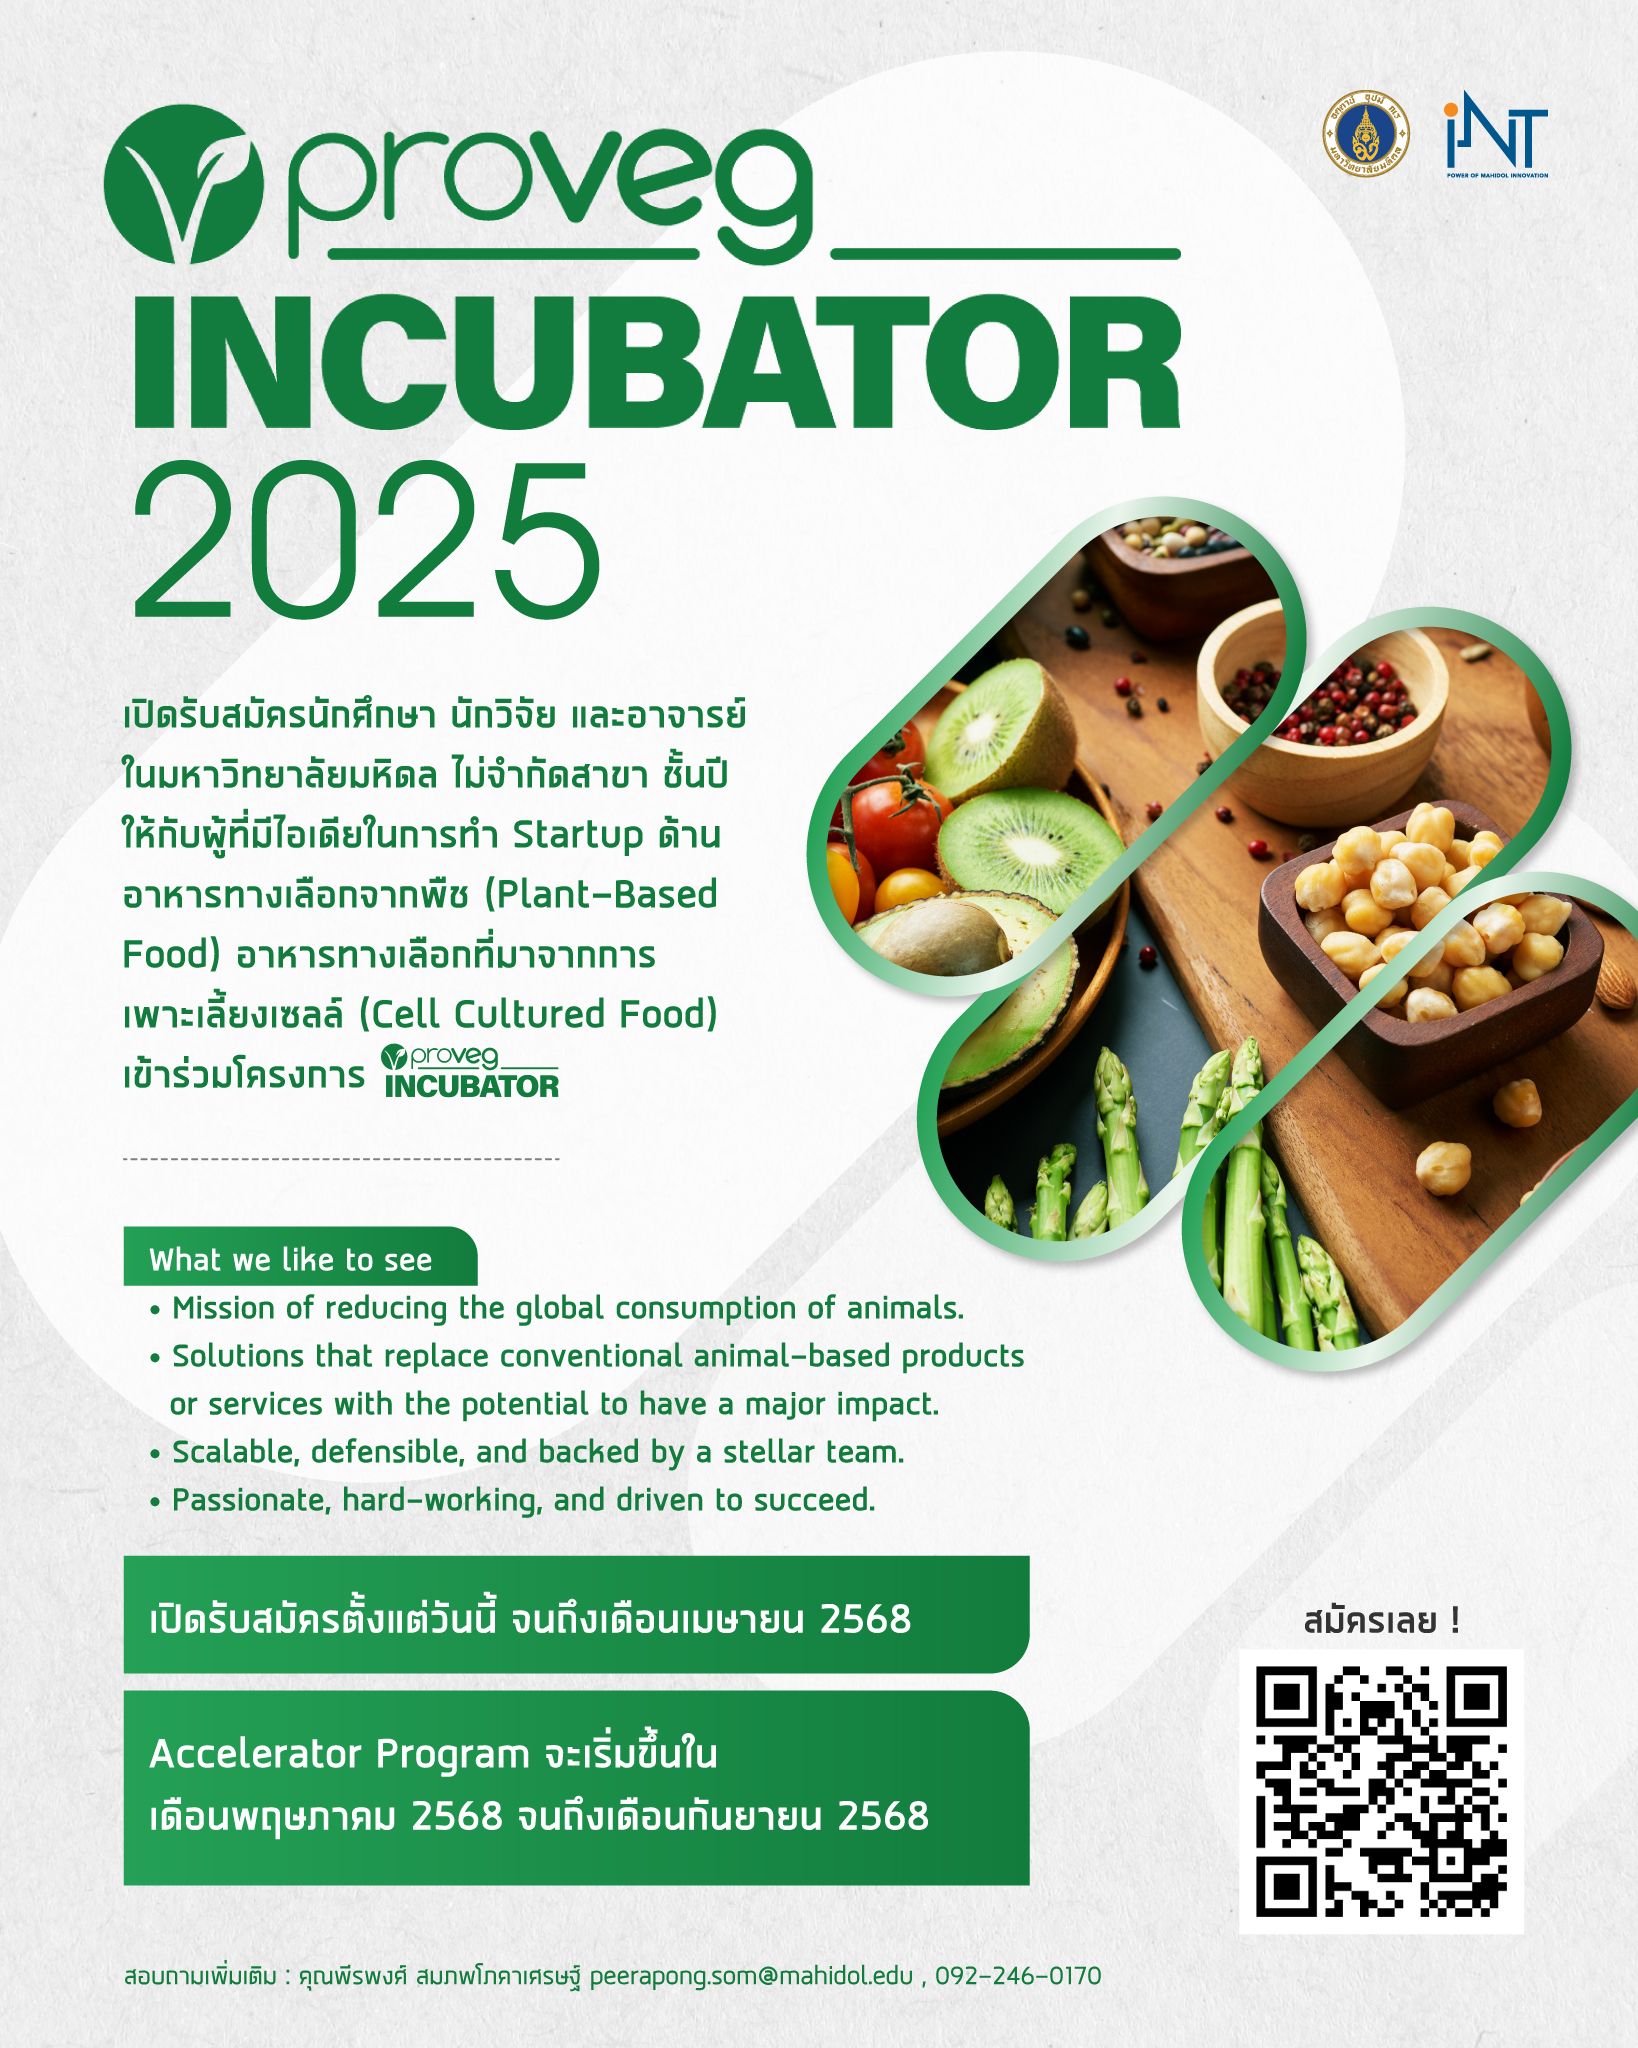 ProVeg Incubator 2025